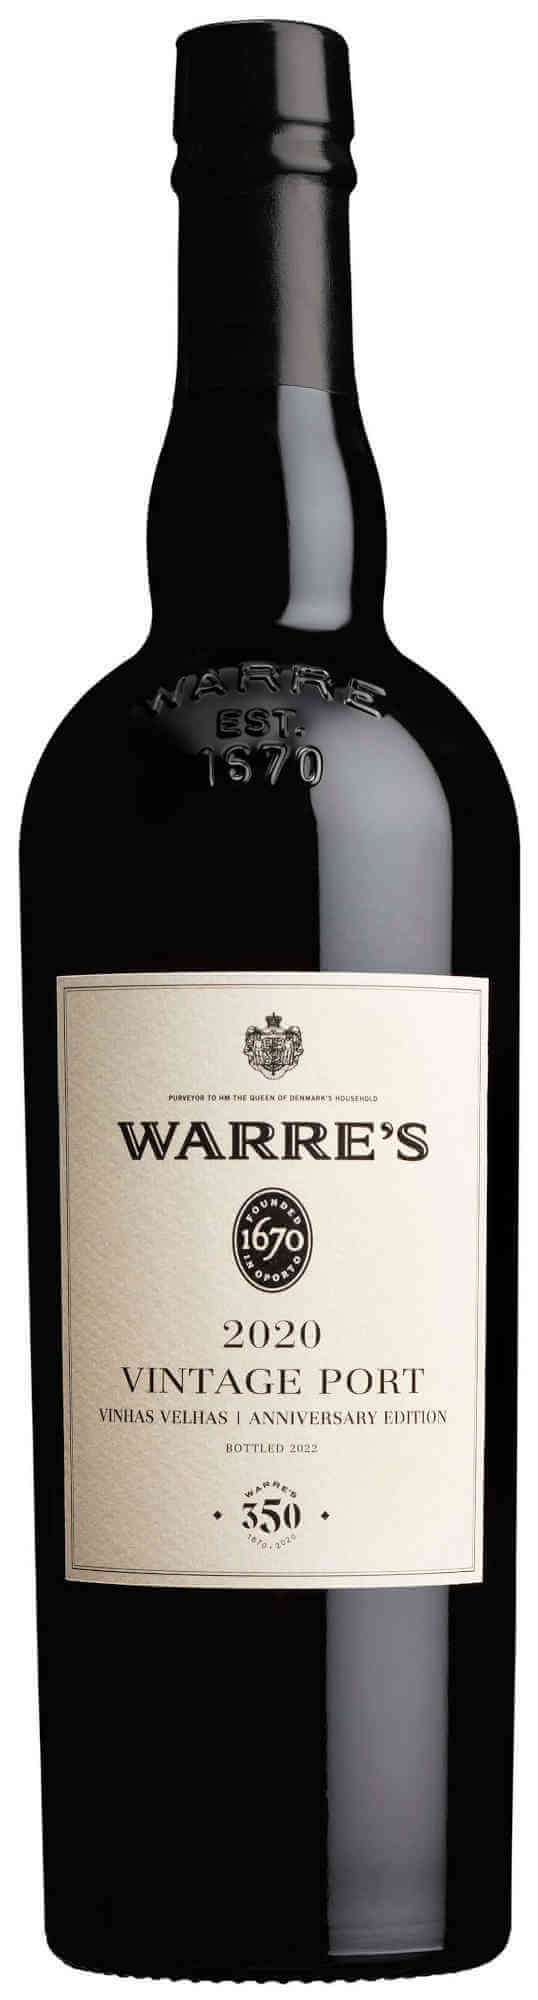 Warres-Vintage-Port-2020